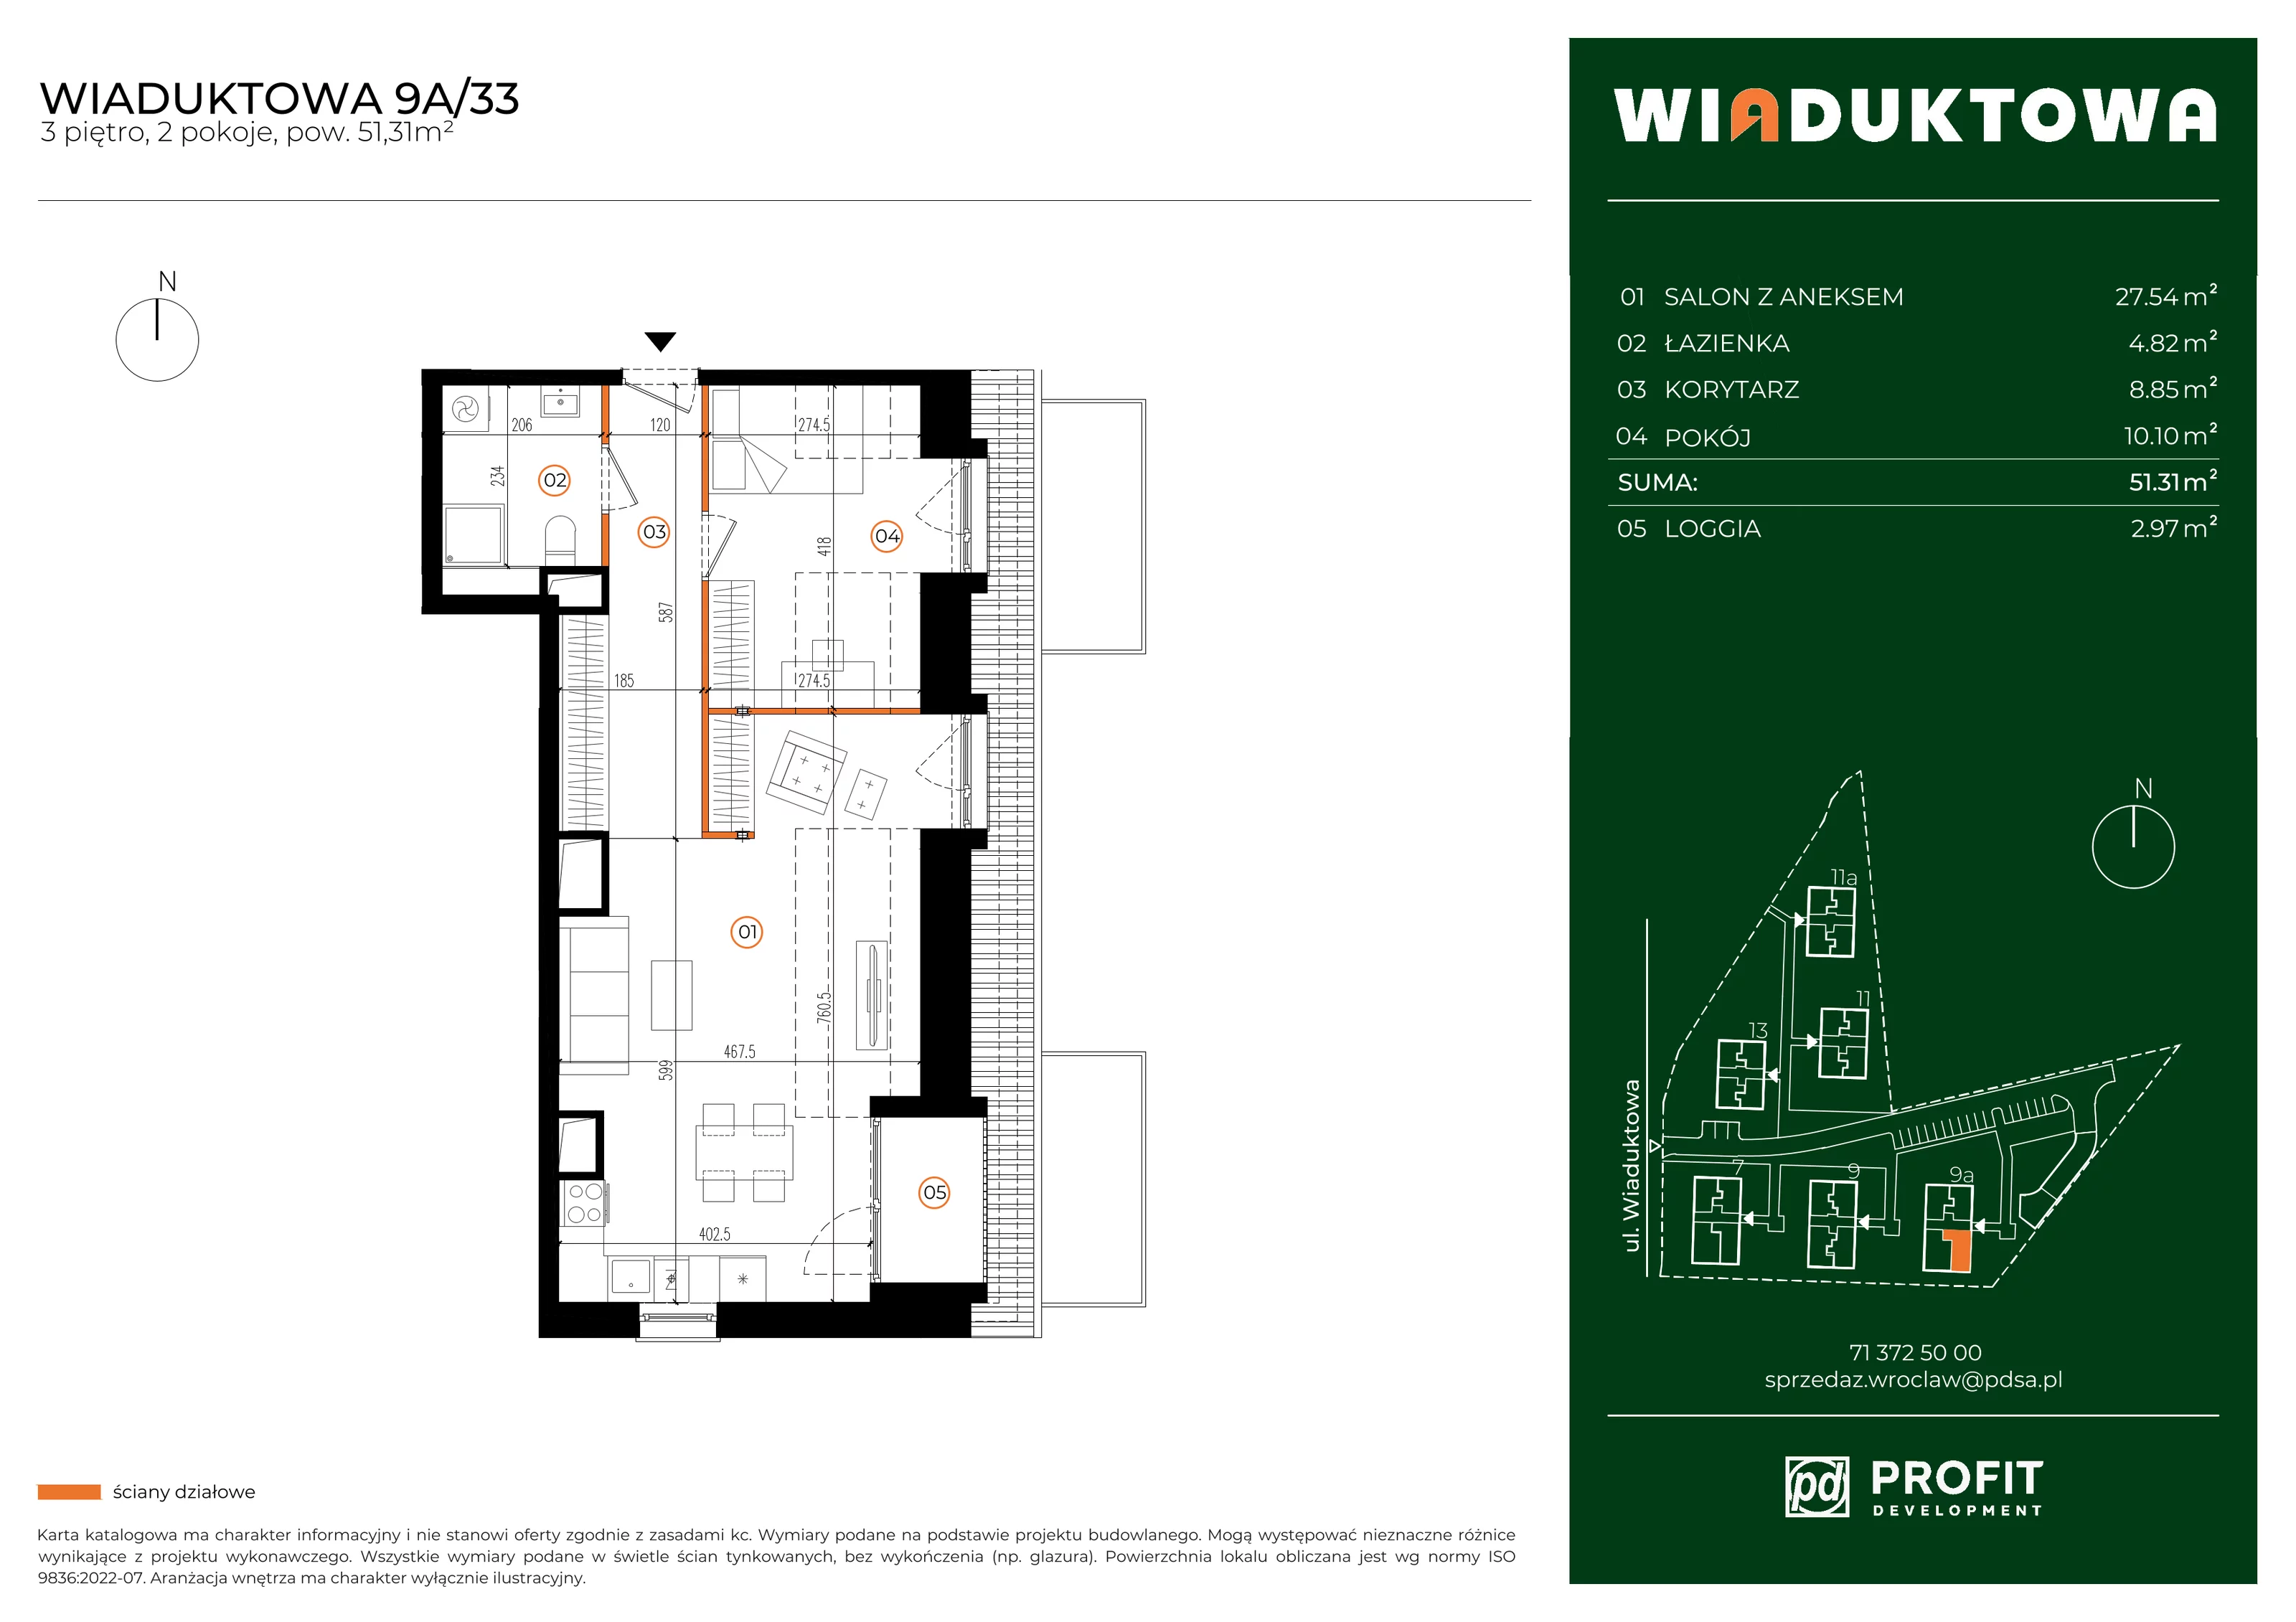 Mieszkanie 51,31 m², piętro 3, oferta nr WI/9A/33, Wiaduktowa, Wrocław, Krzyki-Partynice, Krzyki, ul. Wiaduktowa